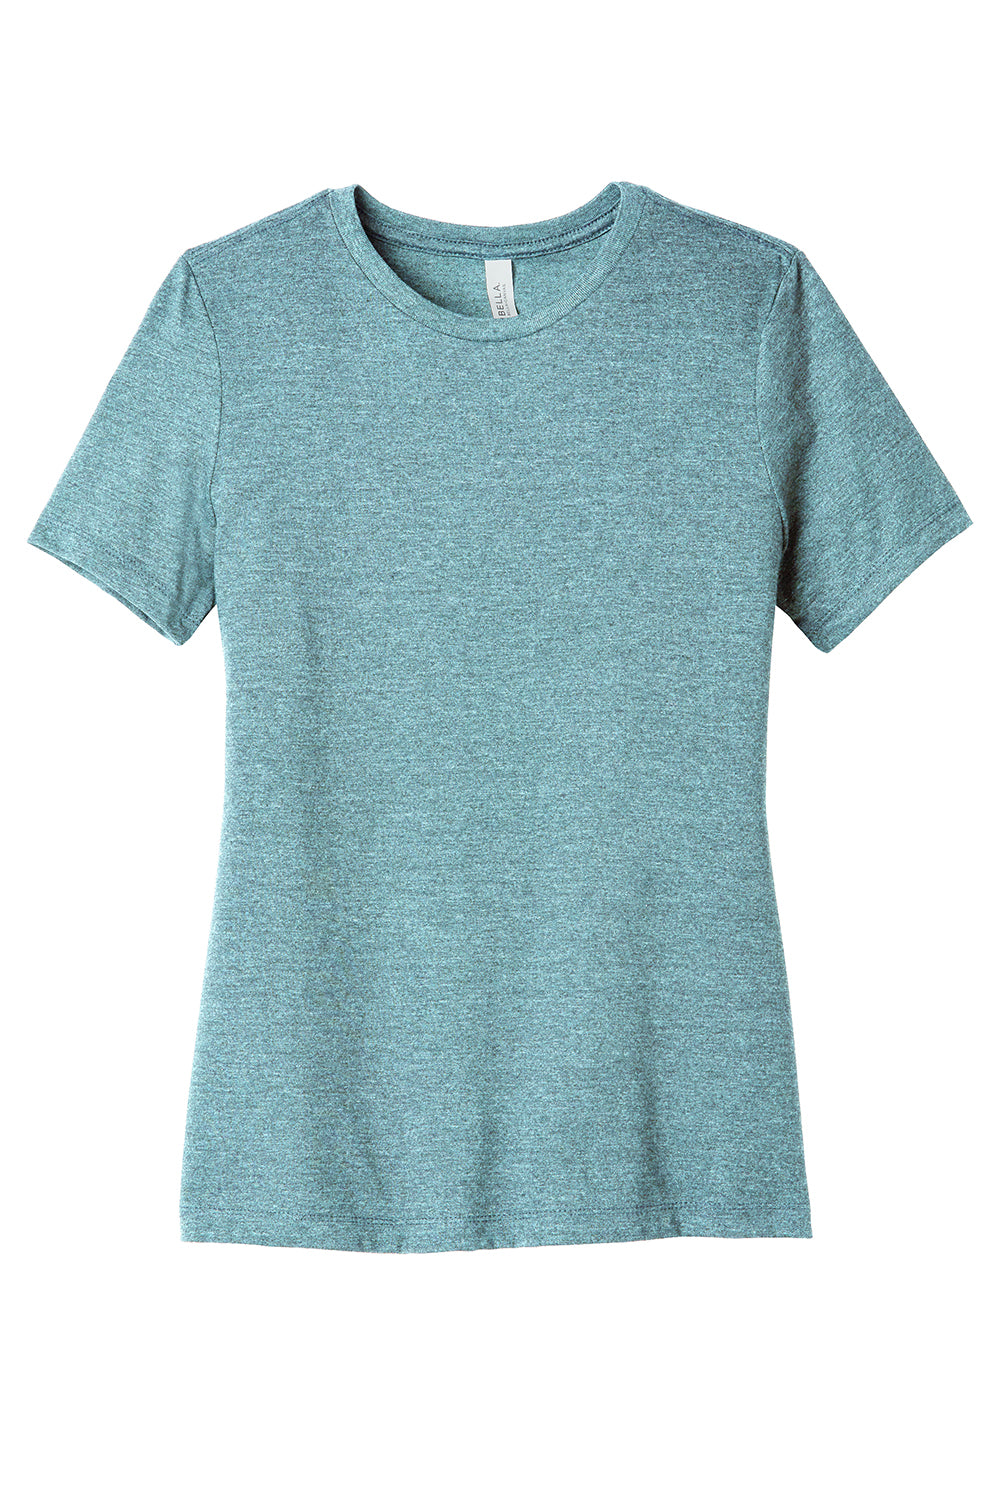 Bella + Canvas BC6400CVC/6400CVC Womens CVC Short Sleeve Crewneck T-Shirt Heather Blue Lagoon Flat Front